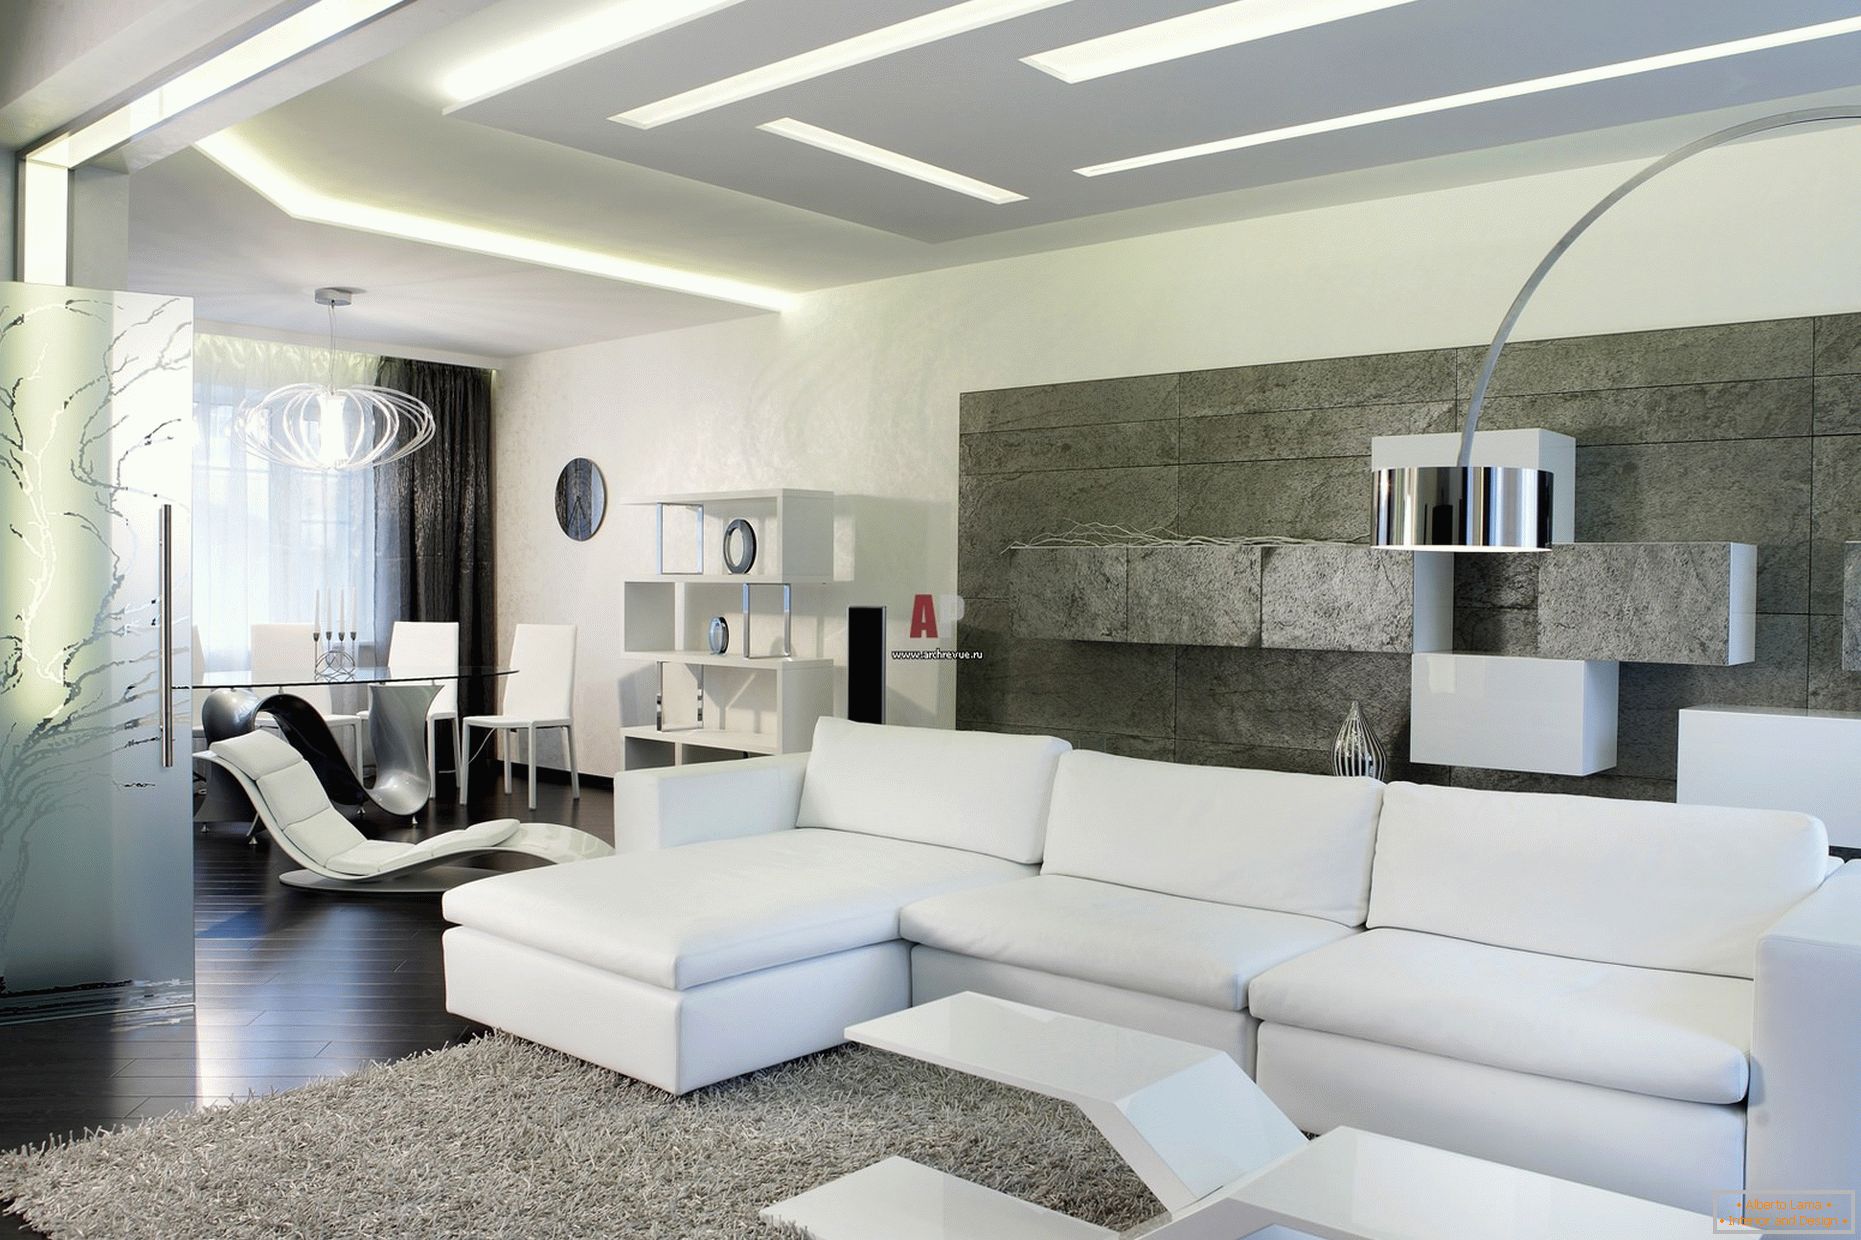 Bijeli unutrašnjost gostiju u sobi u minimalističkom stilu je vredna pažnje za savremeni, hrabar dizajn sa savjetima visokotehnološkog karaktera.